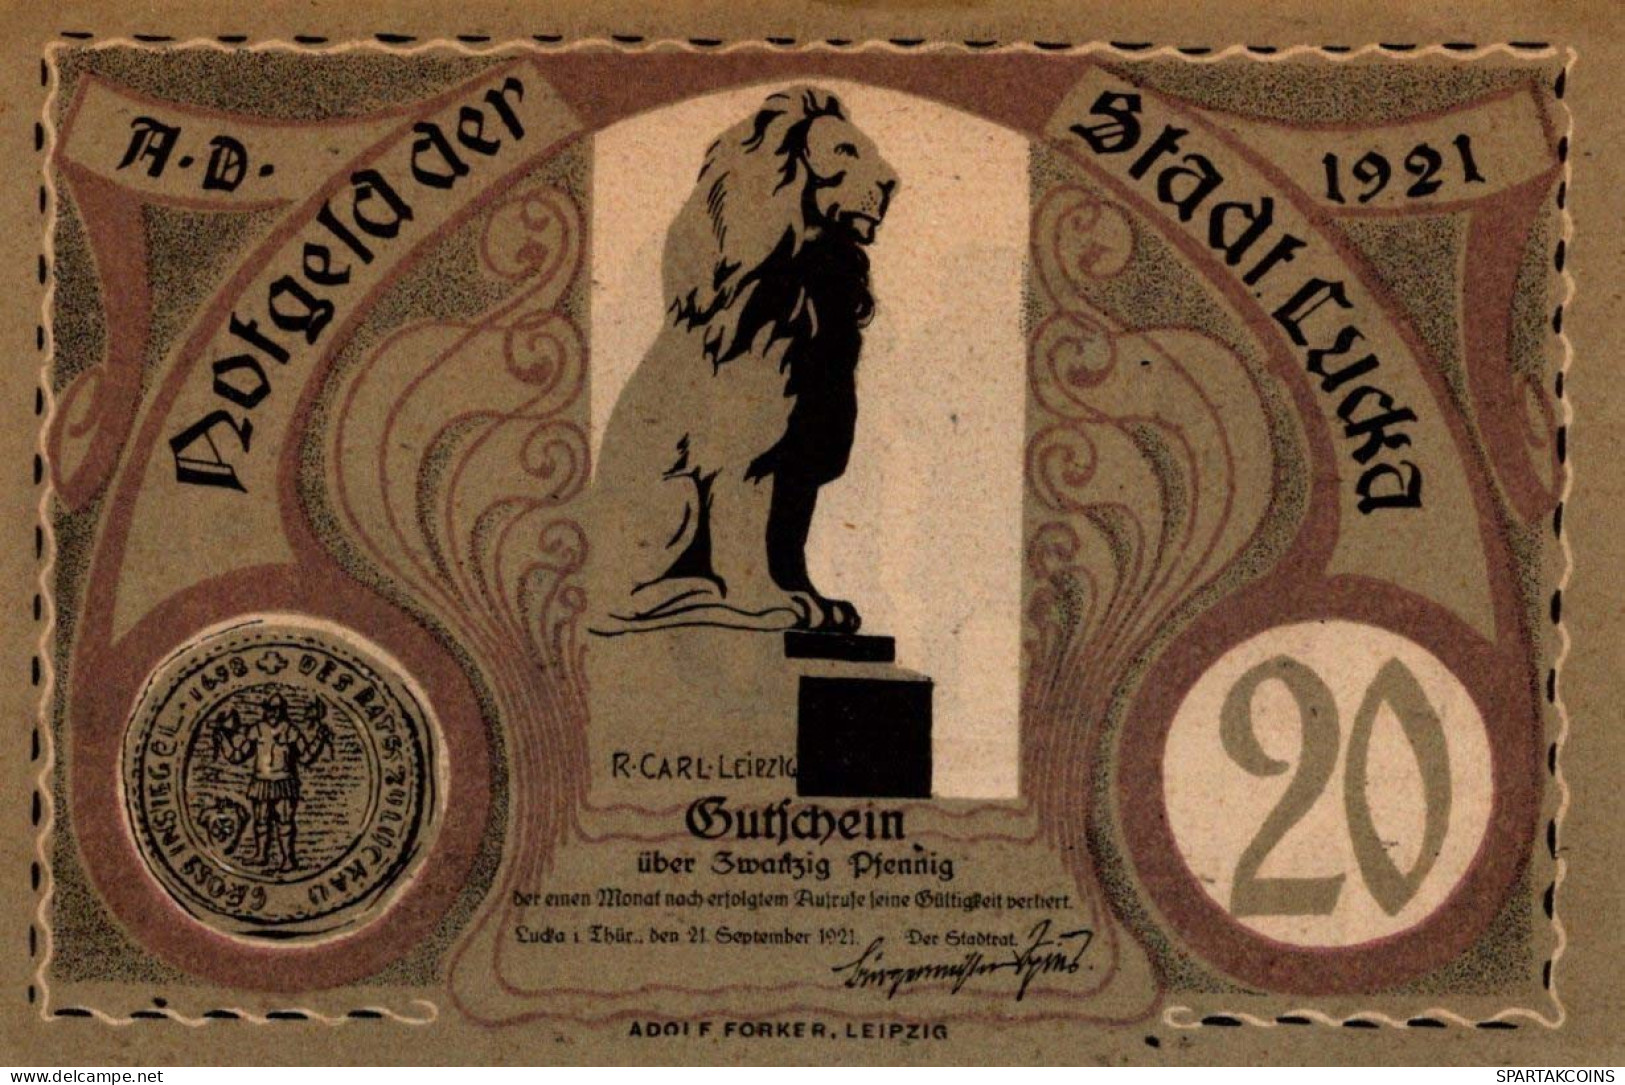 20 PFENNIG 1921 Stadt LUCKAU Brandenburg UNC DEUTSCHLAND Notgeld Banknote #PC490 - [11] Local Banknote Issues